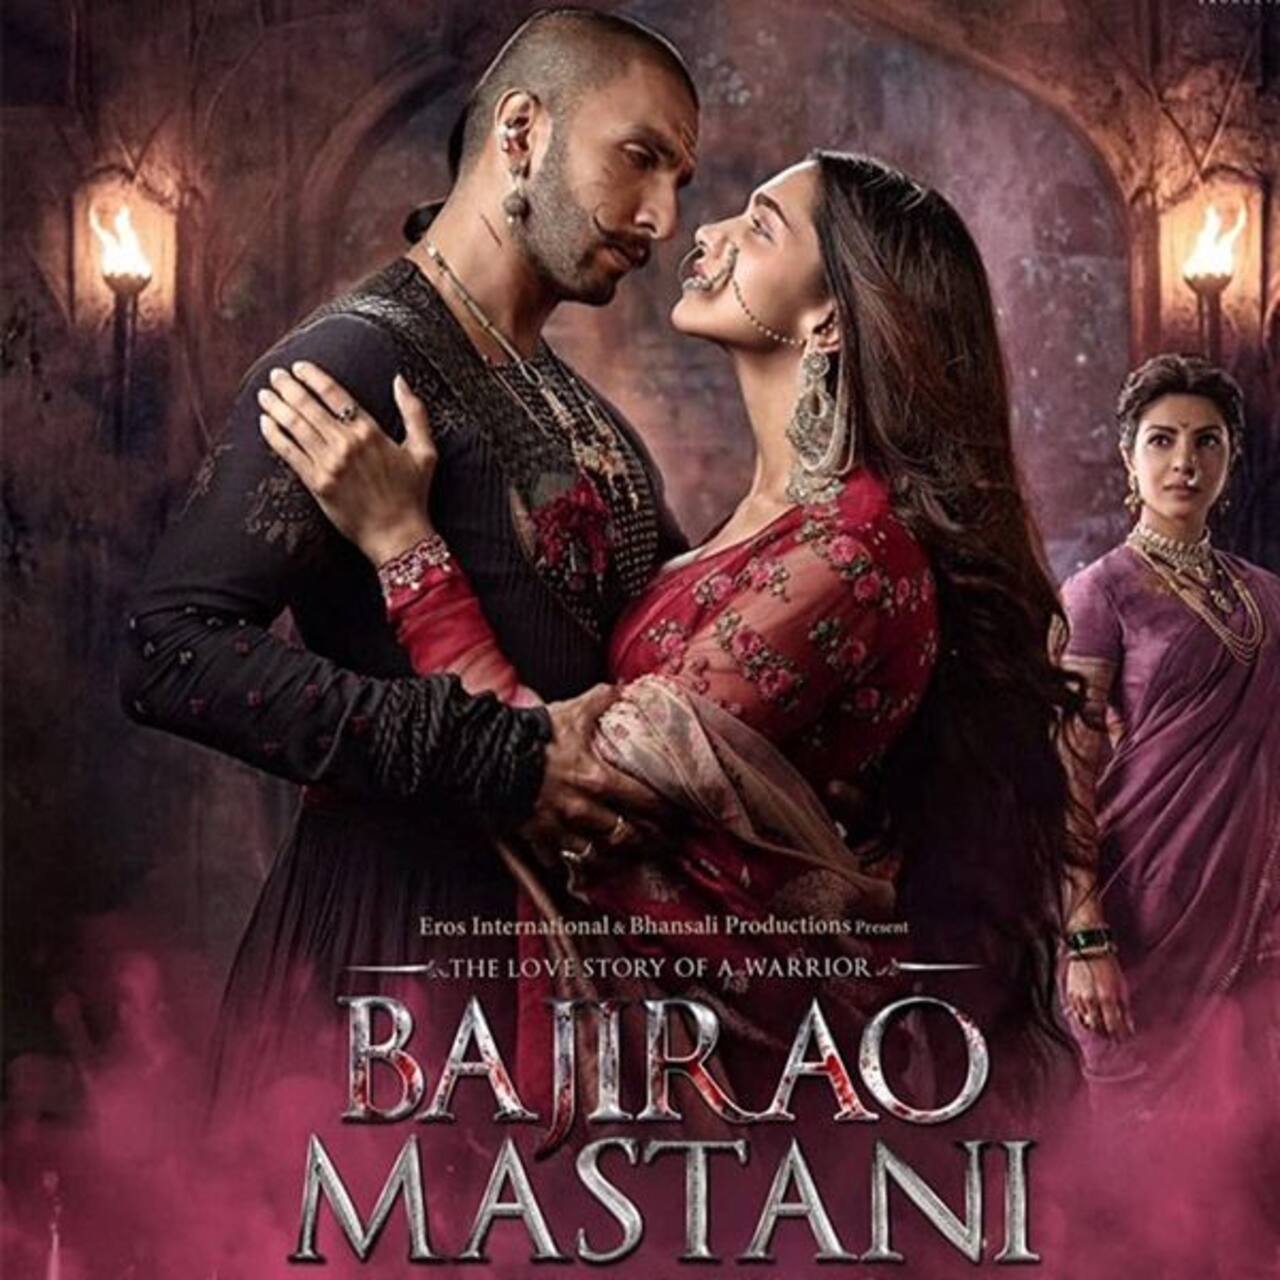 Best Bollywood historical movies: Bajirao Mastani starring Ranveer Singh and Deepika Padukone